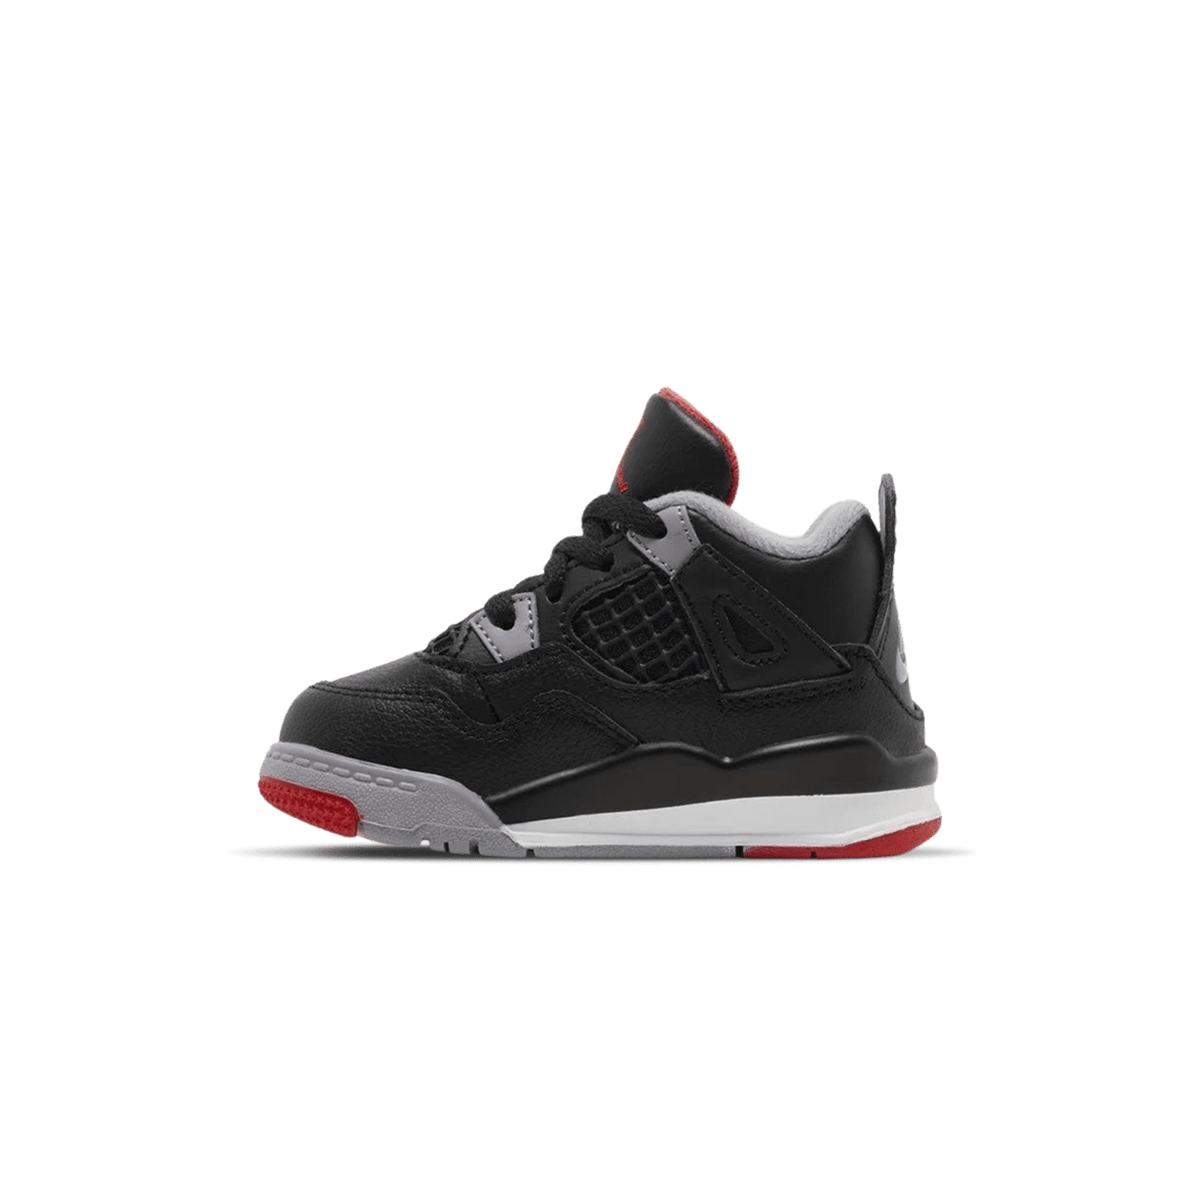 Air Jordan Michael 4 Retro TD 'Bred Reimagined' - Kick Basketball